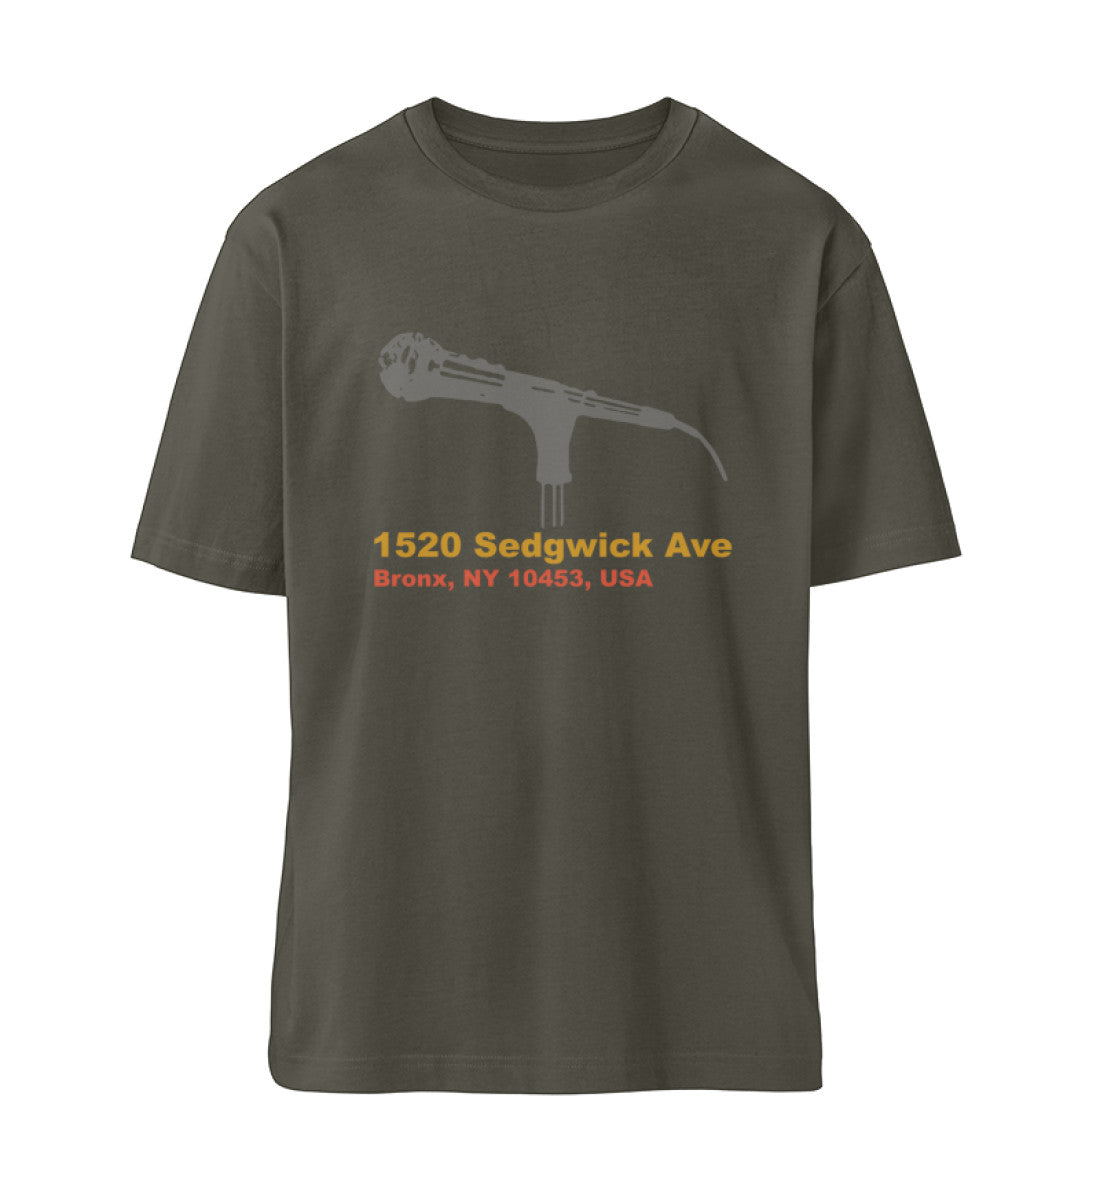 Khaki farbiges T-Shirt Unisex Relaxed Fit für Frauen und Männer bedruckt mit dem Design der Roger Rockawoo Kollektion Hip Hope 1520 Sedgwick Ave